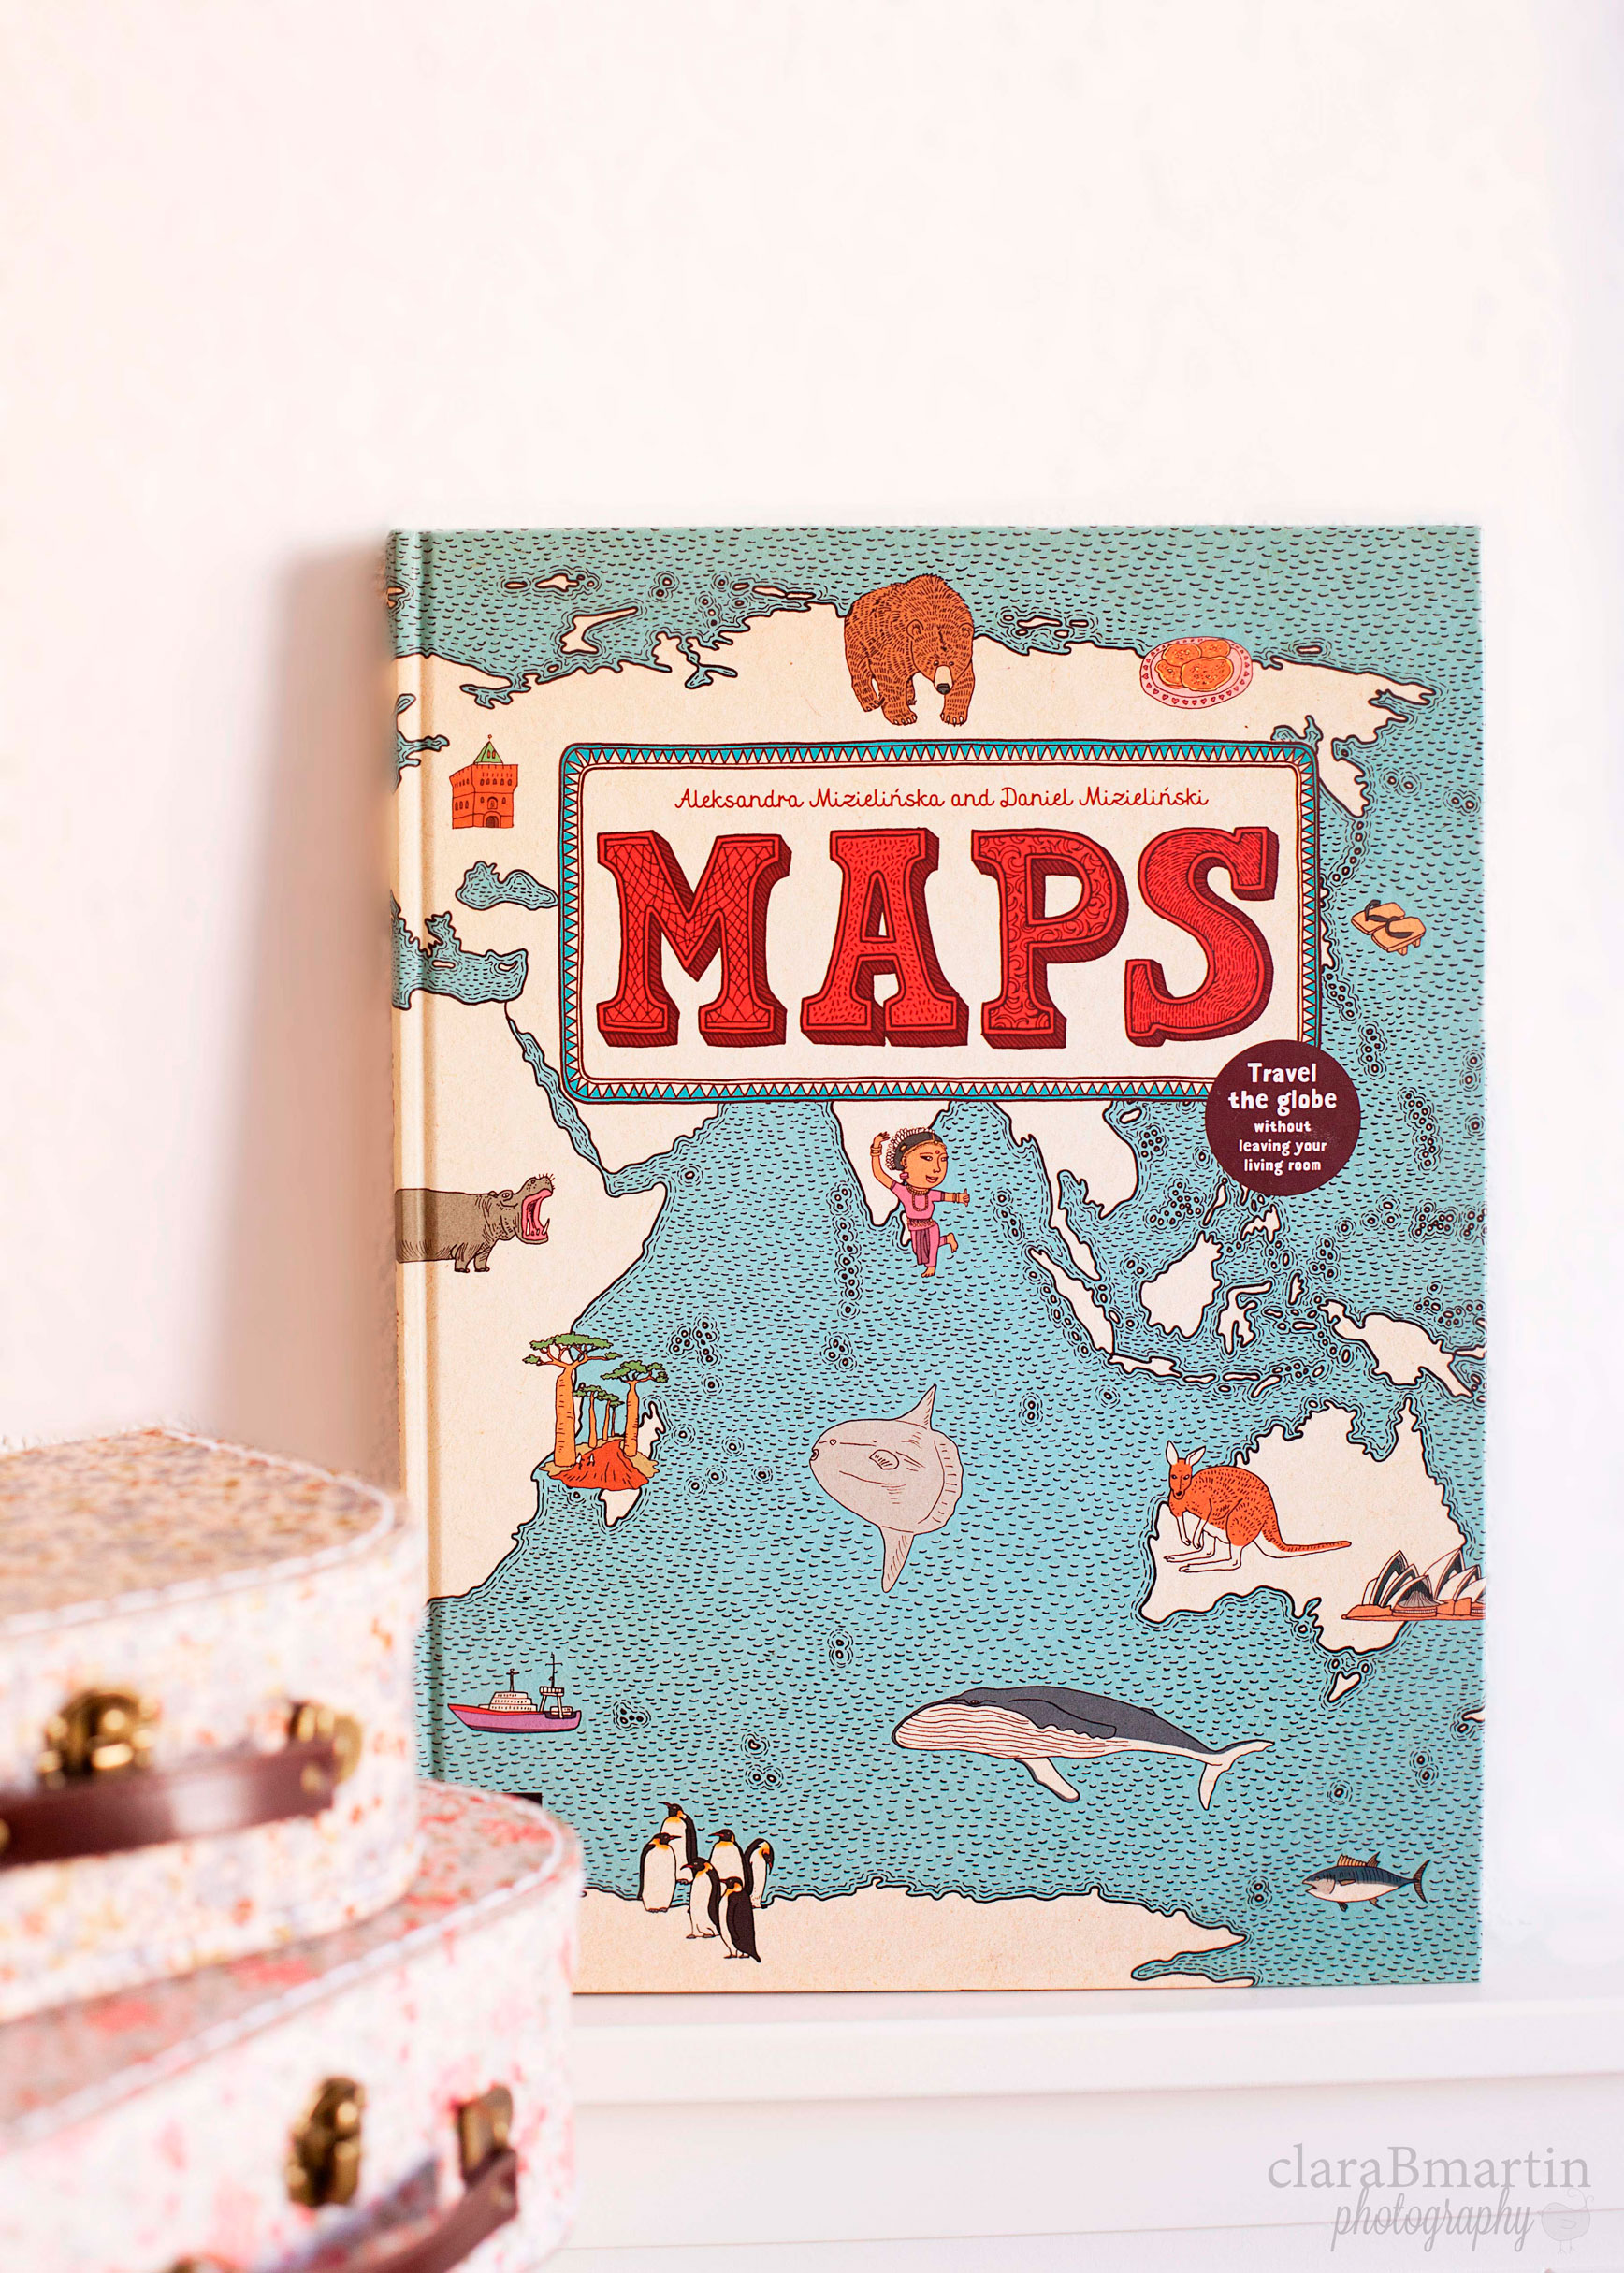 Libro Maps_claraBmartin10